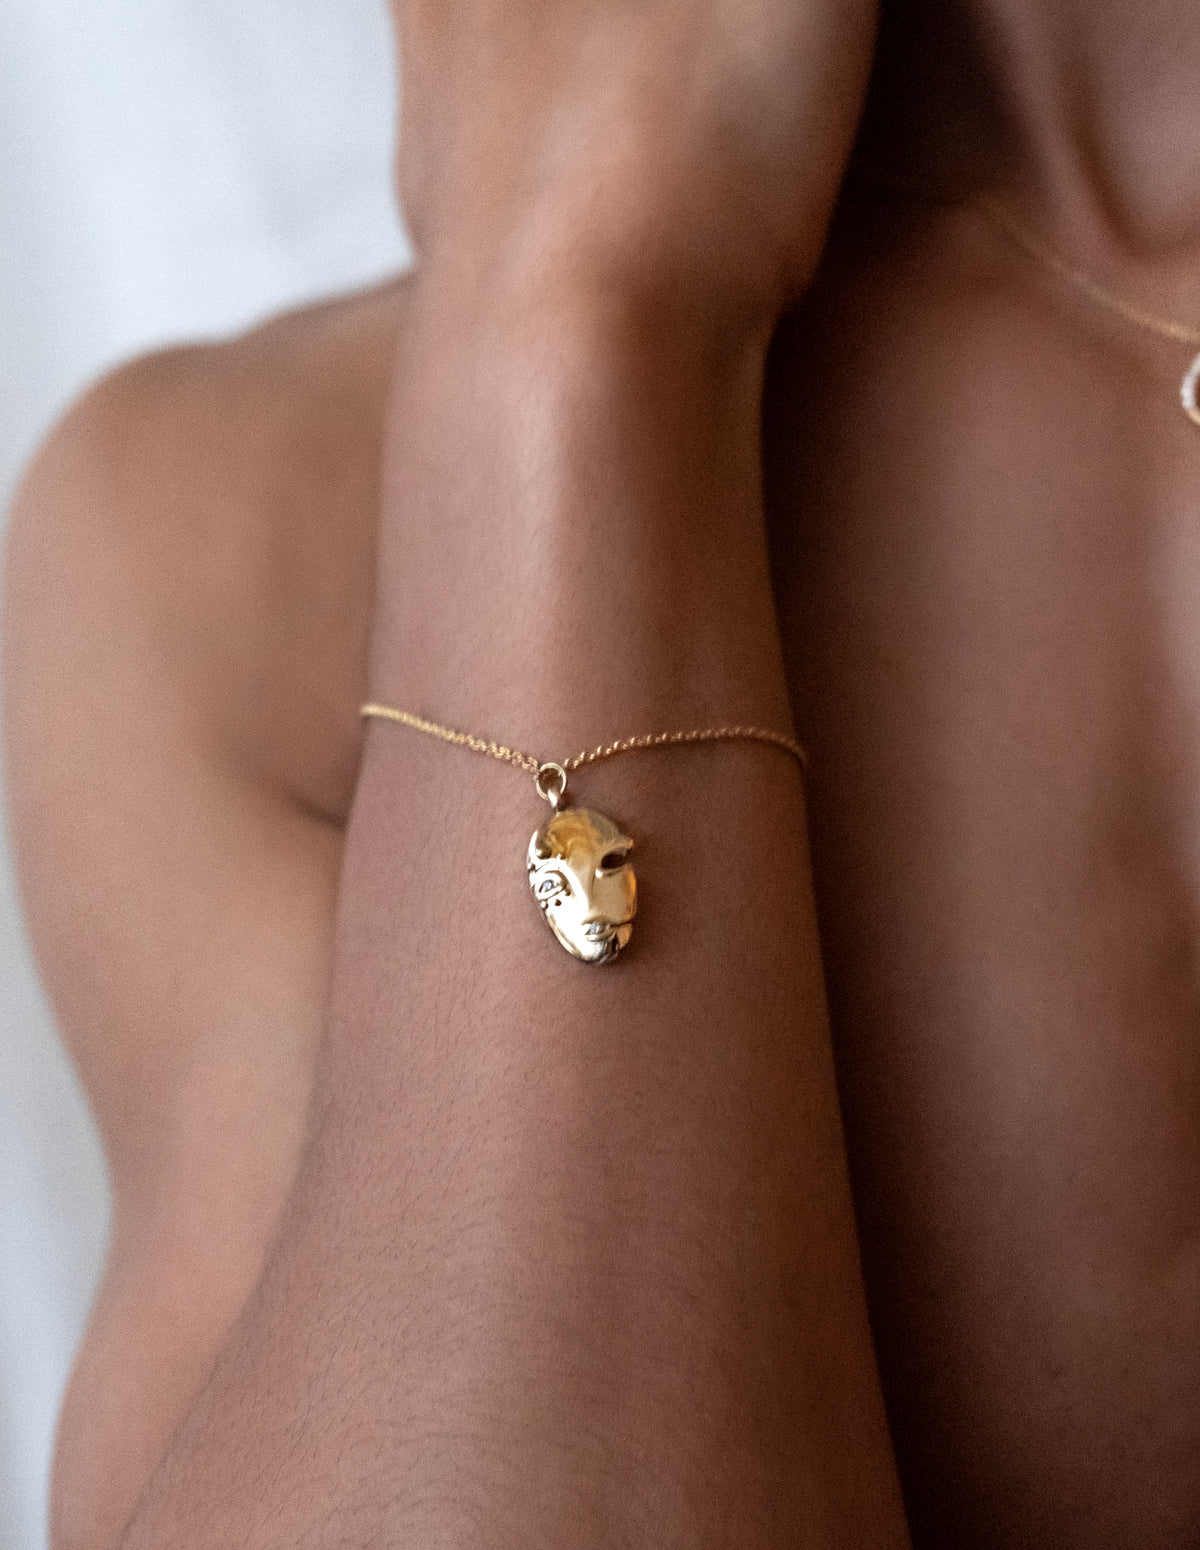 Mask Bracelet in 18k Gold with Diamonds